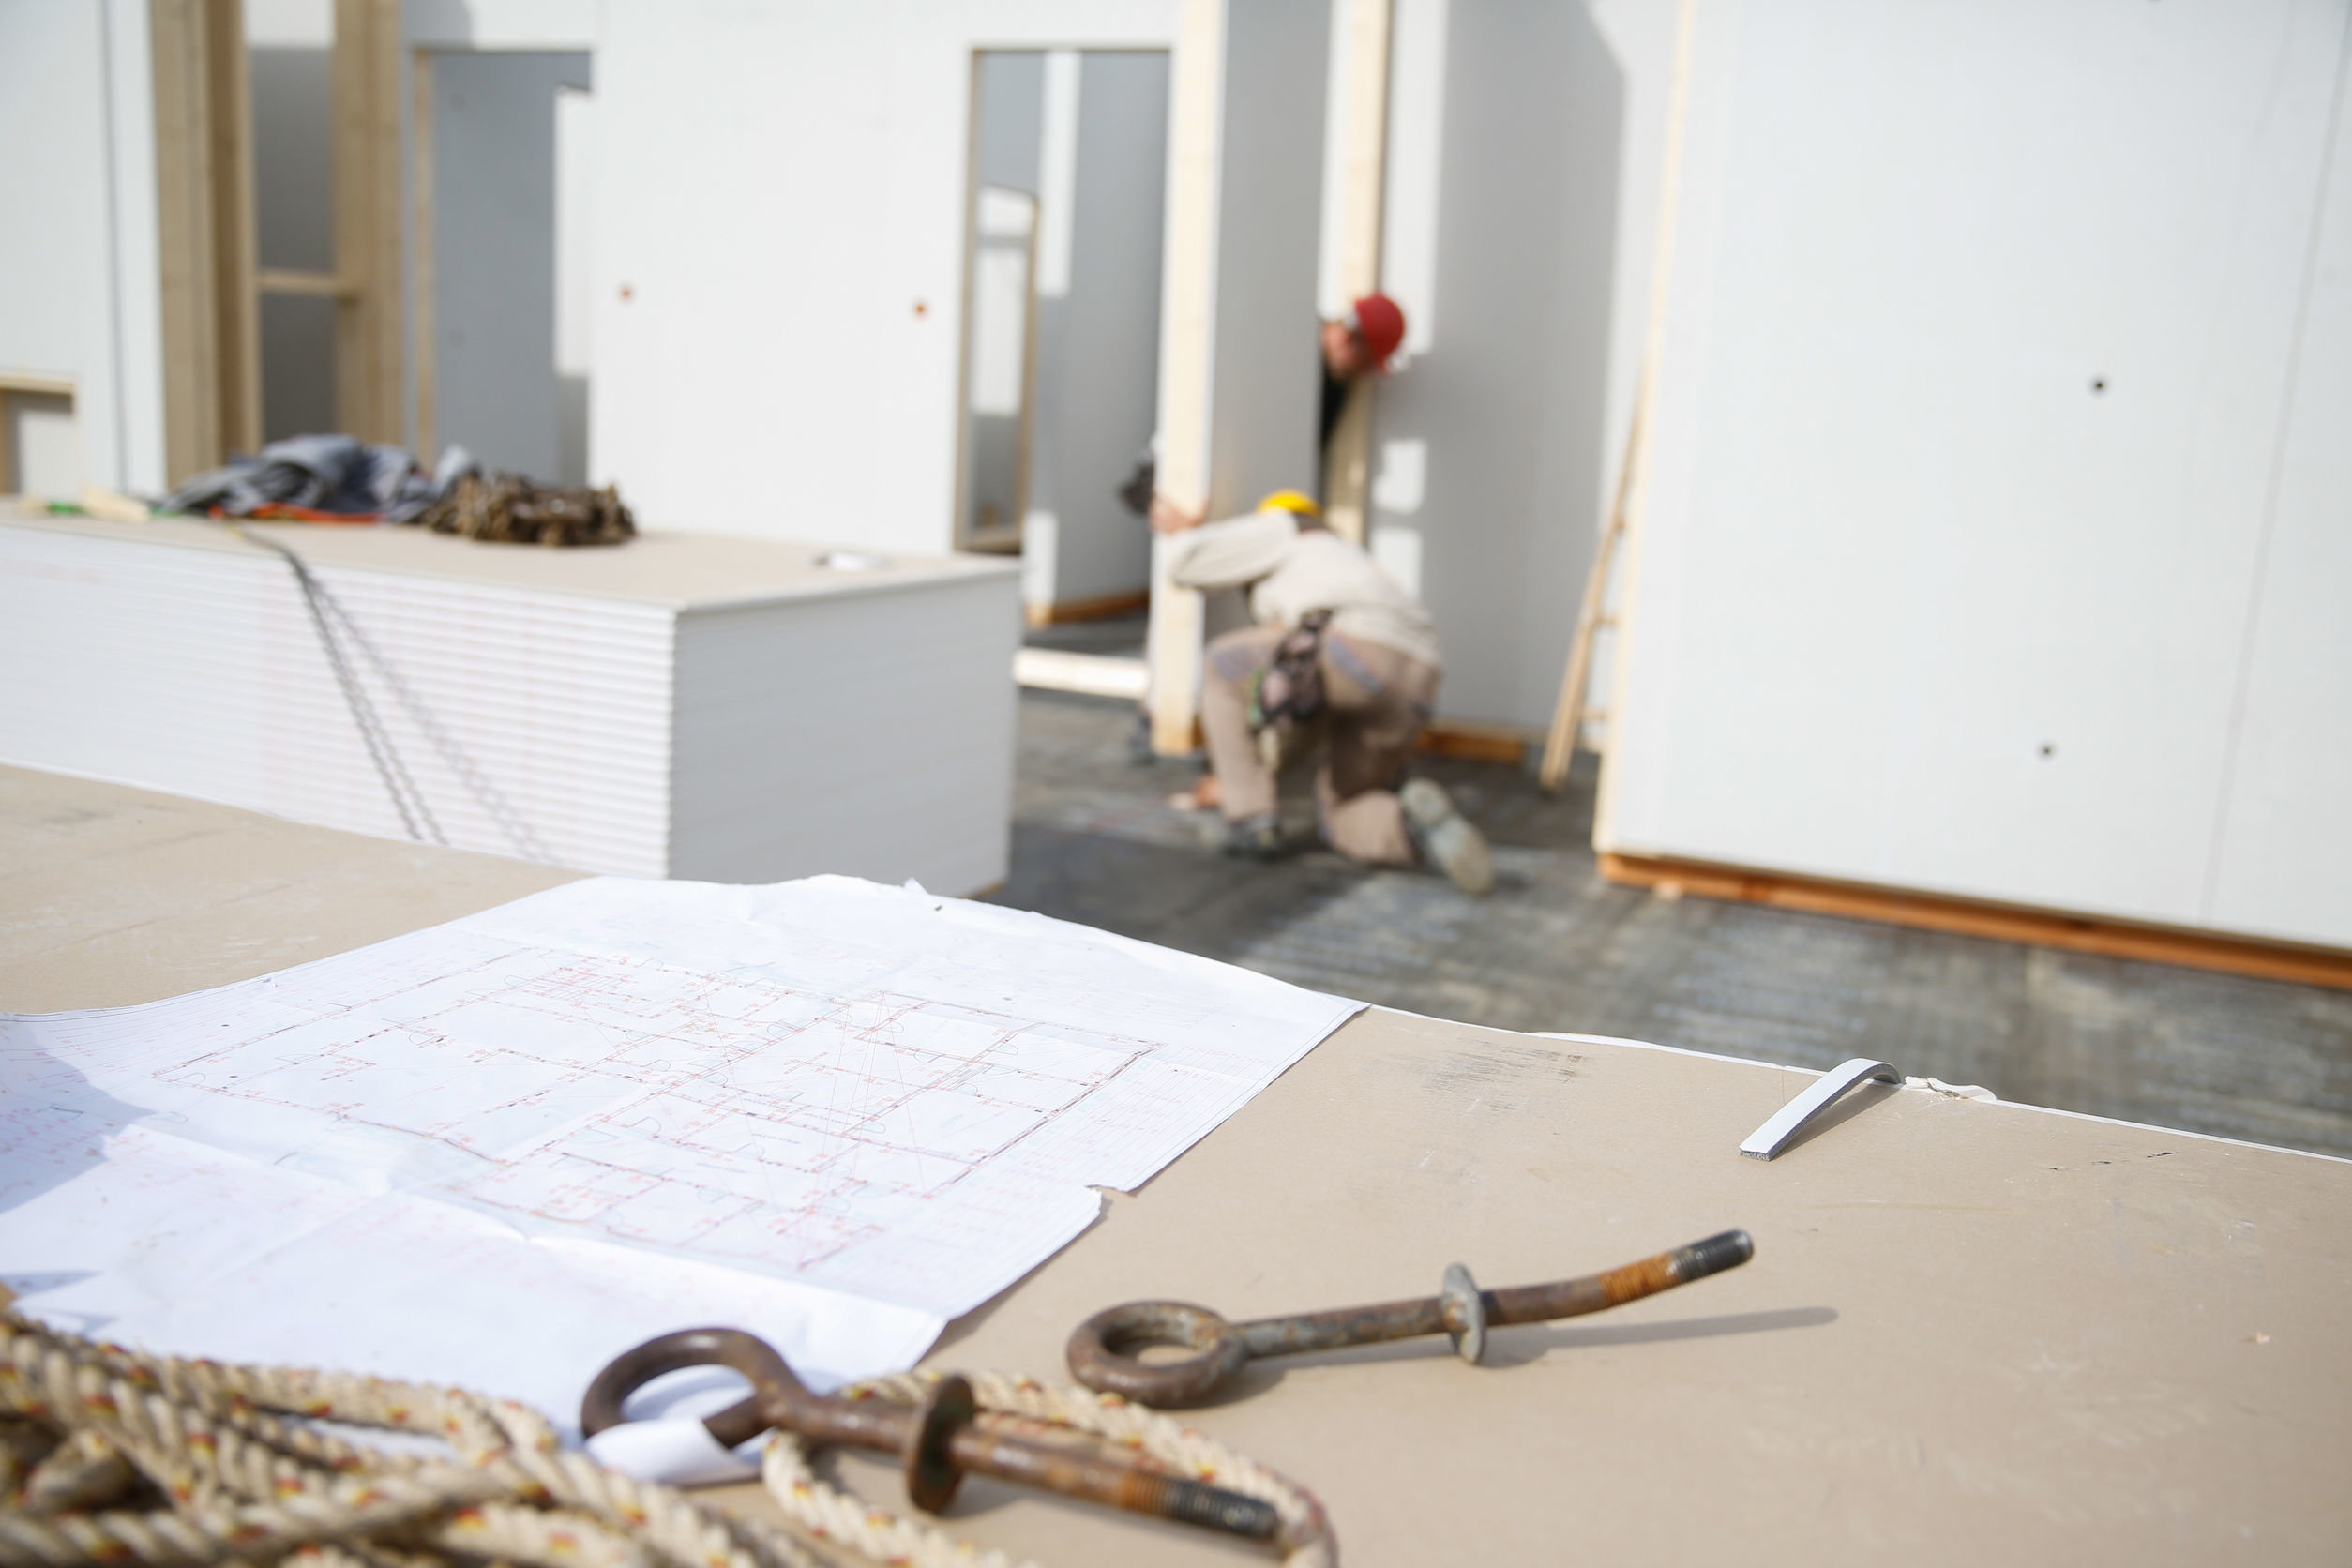 Bauzeichnung und Werkzeug auf einem Tisch und im Hintergrund Schnellbauplatten für den Ausbau